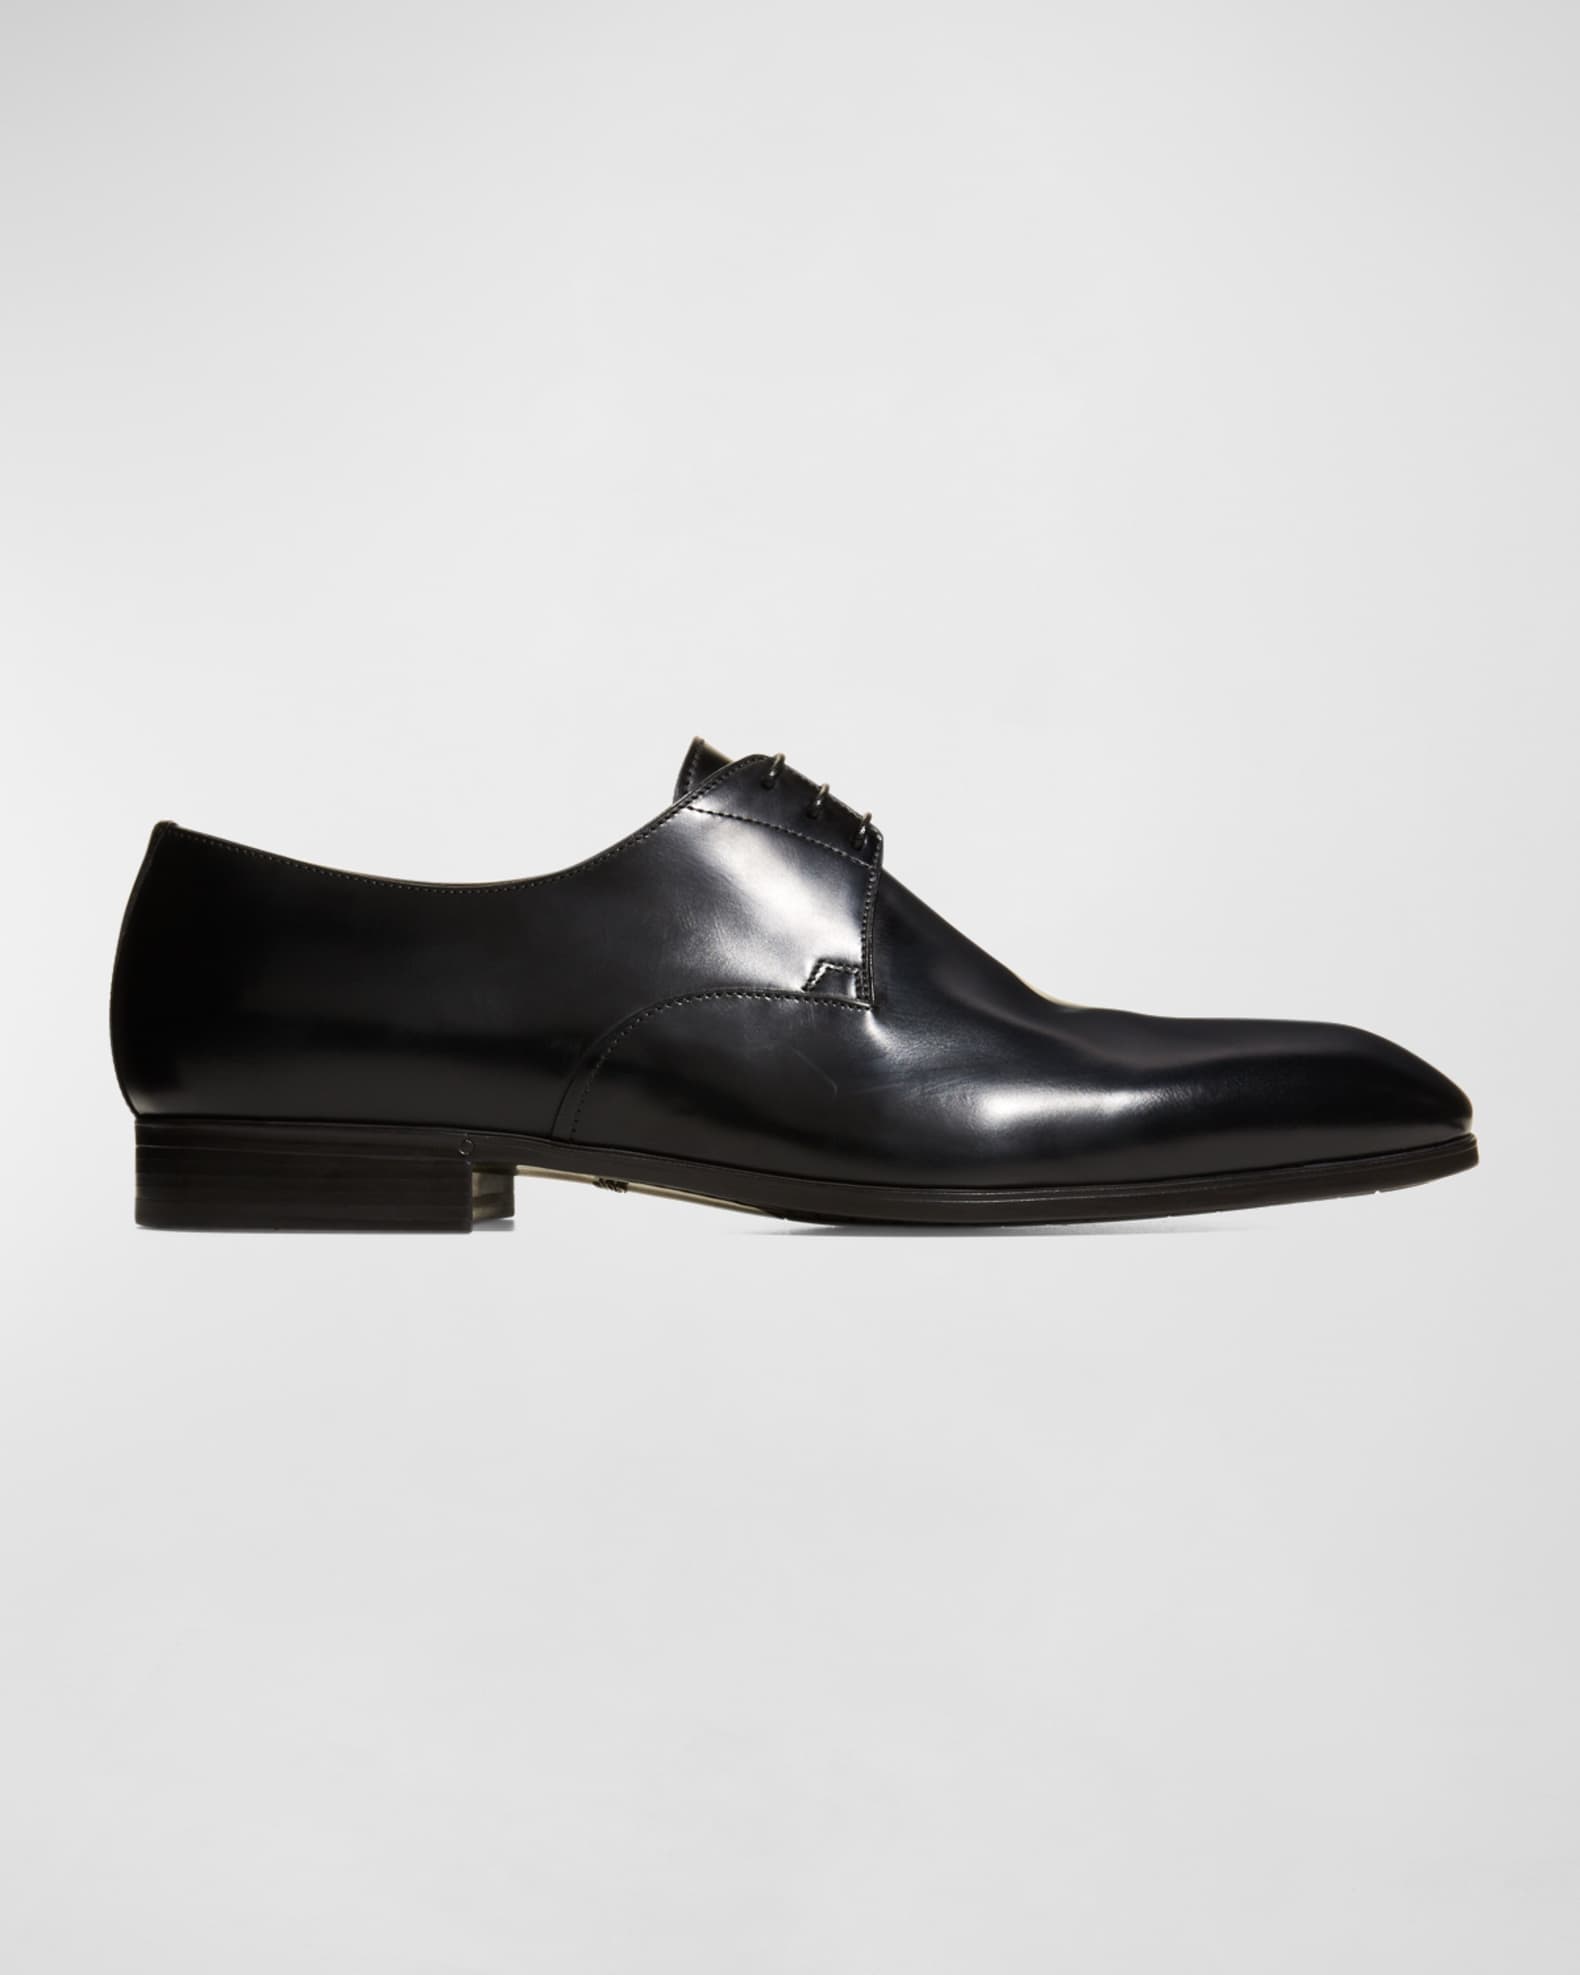 Louis Vuitton Shoes. Review and Unboxing (Kensington Derby shoes) 